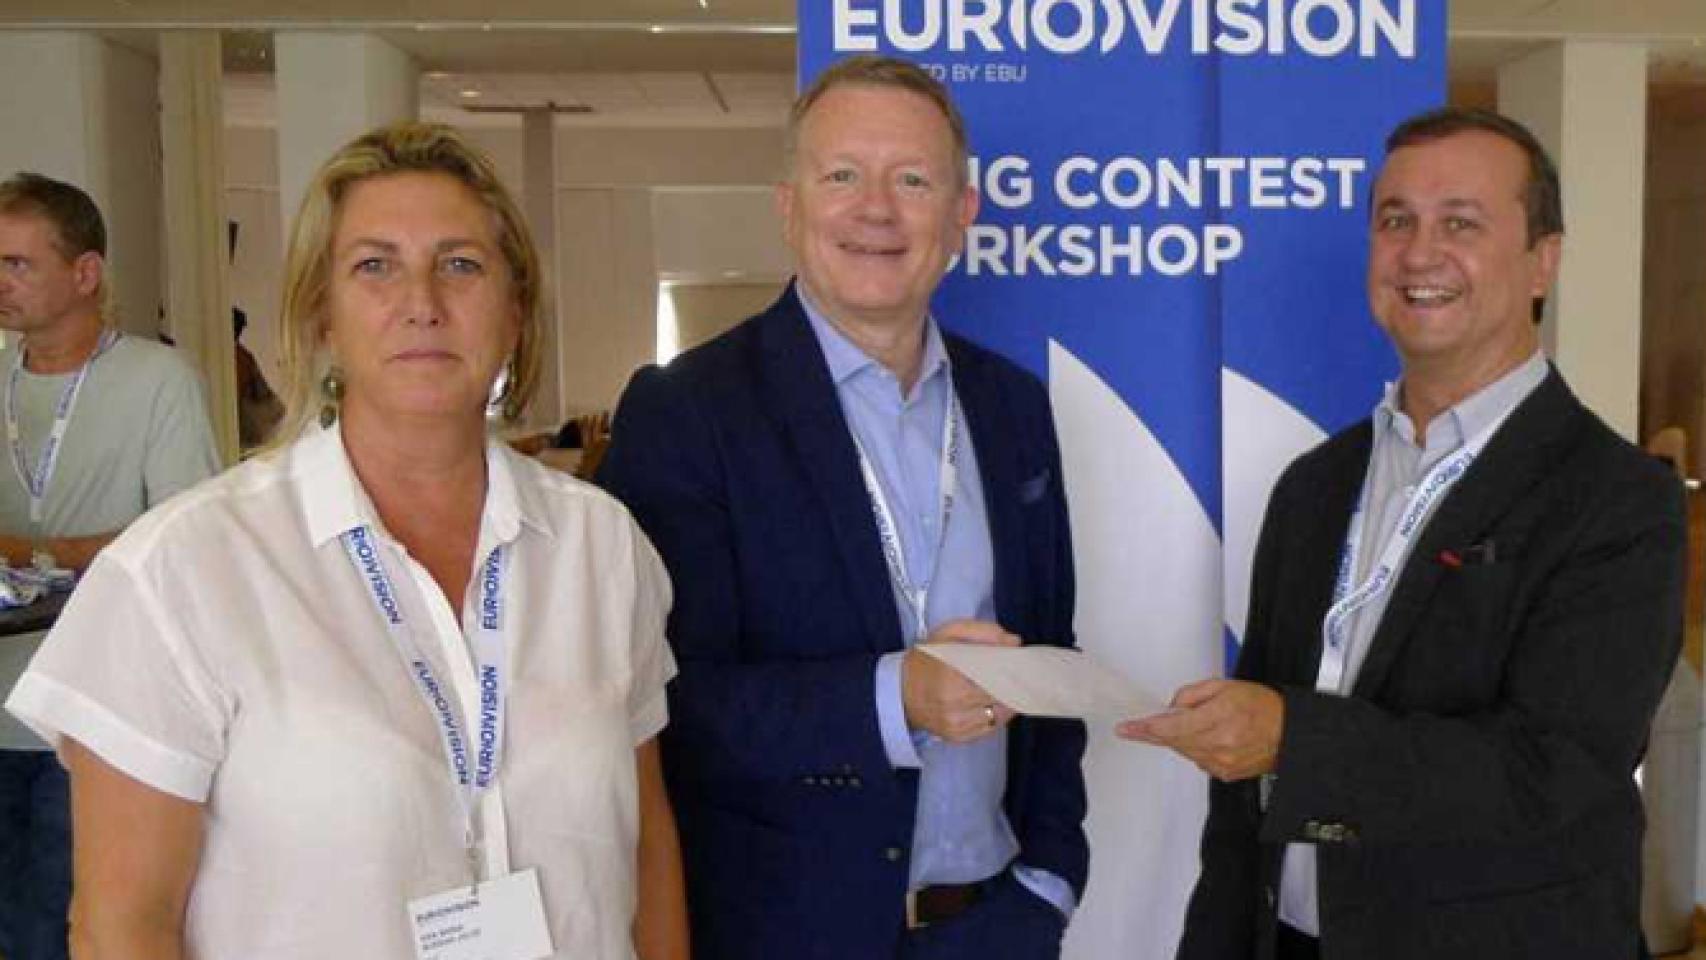 RTVE confirma de manera oficial su participación en Eurovisión 2017